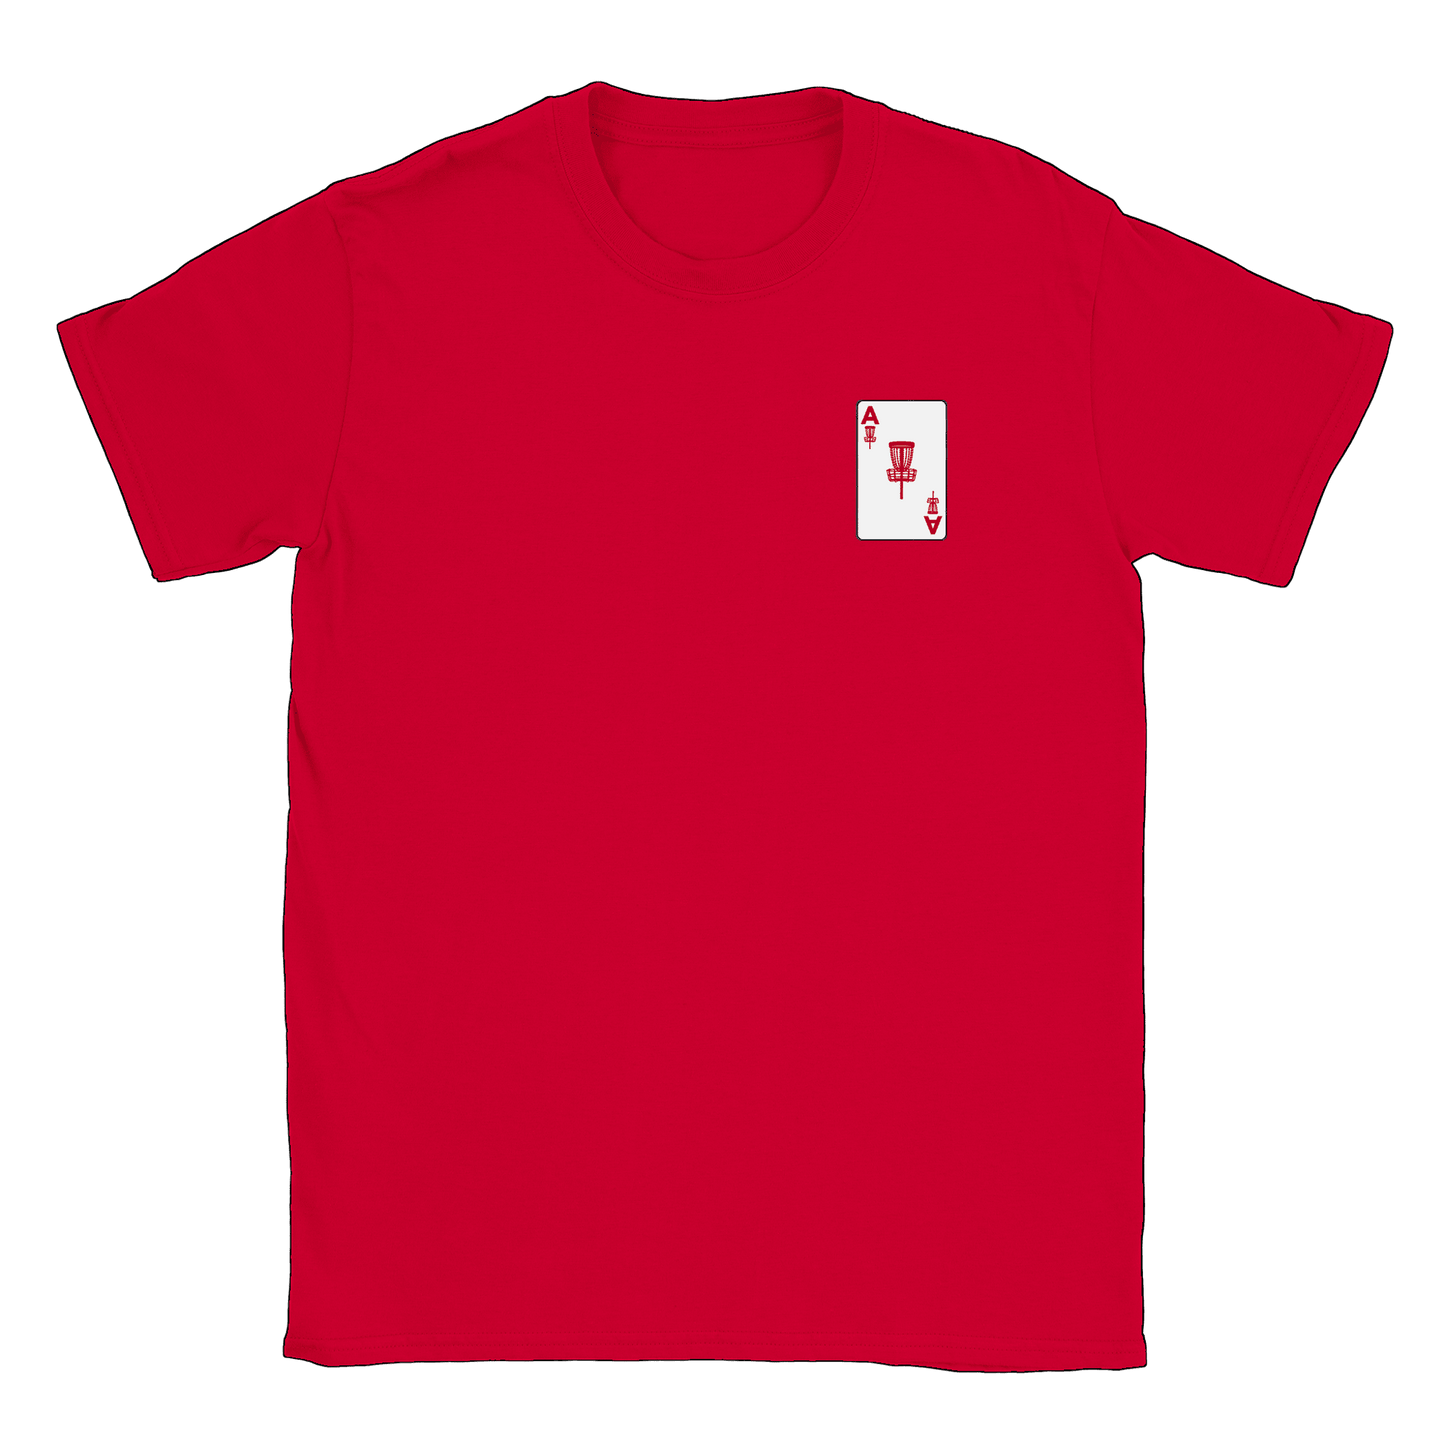 ACE Discgolf litet tryck - T-shirt Röd